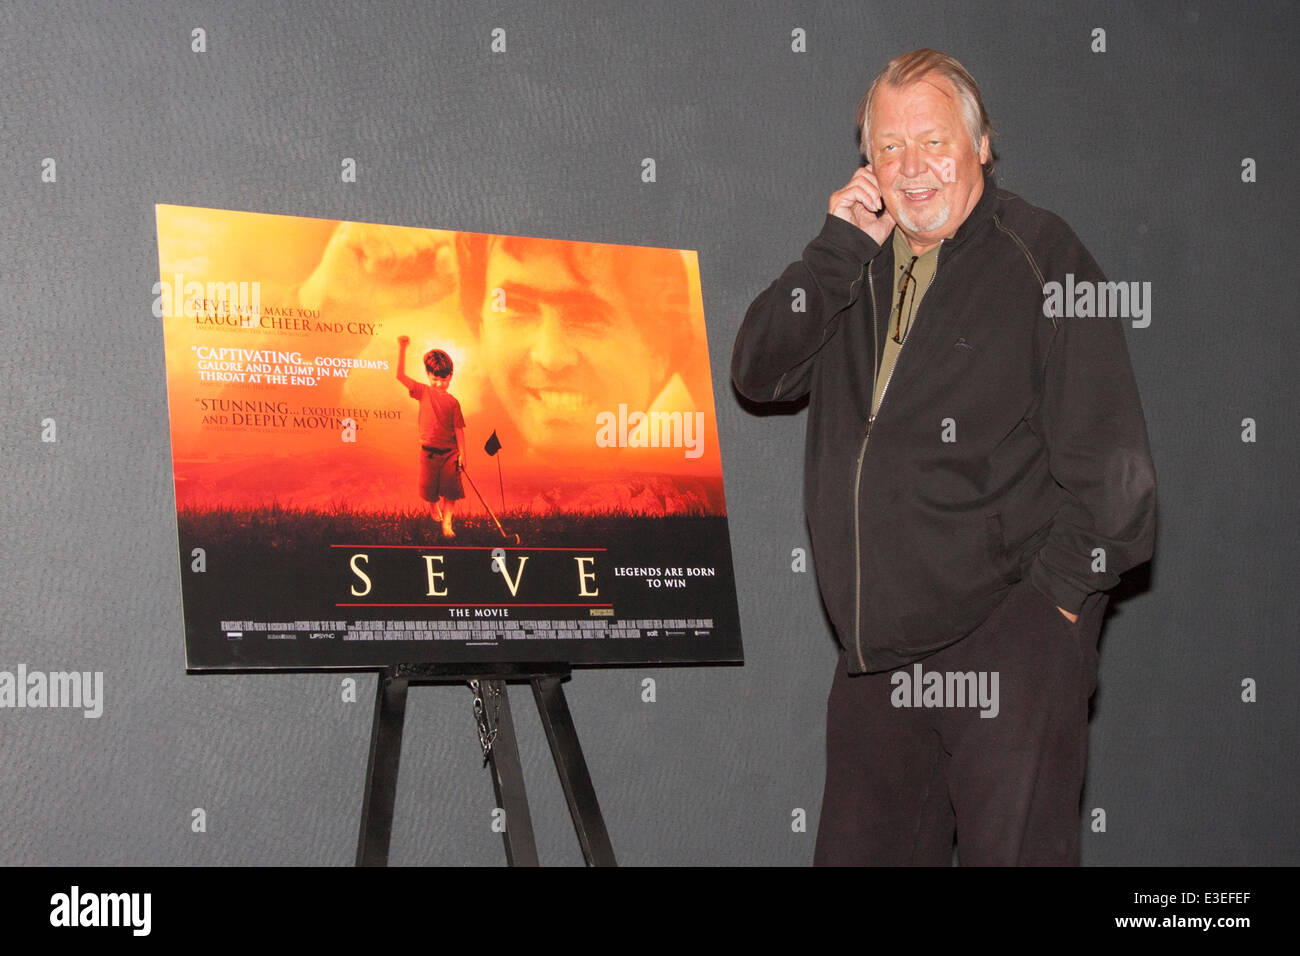 London, UK. 23. Juni 2014. Starsky und Hutch Schauspieler David Soul besucht die Premiere des Films Seve, ein Biopic des Lebens von den legendären spanischen Golfer Seve Ballesteros. Stockfoto